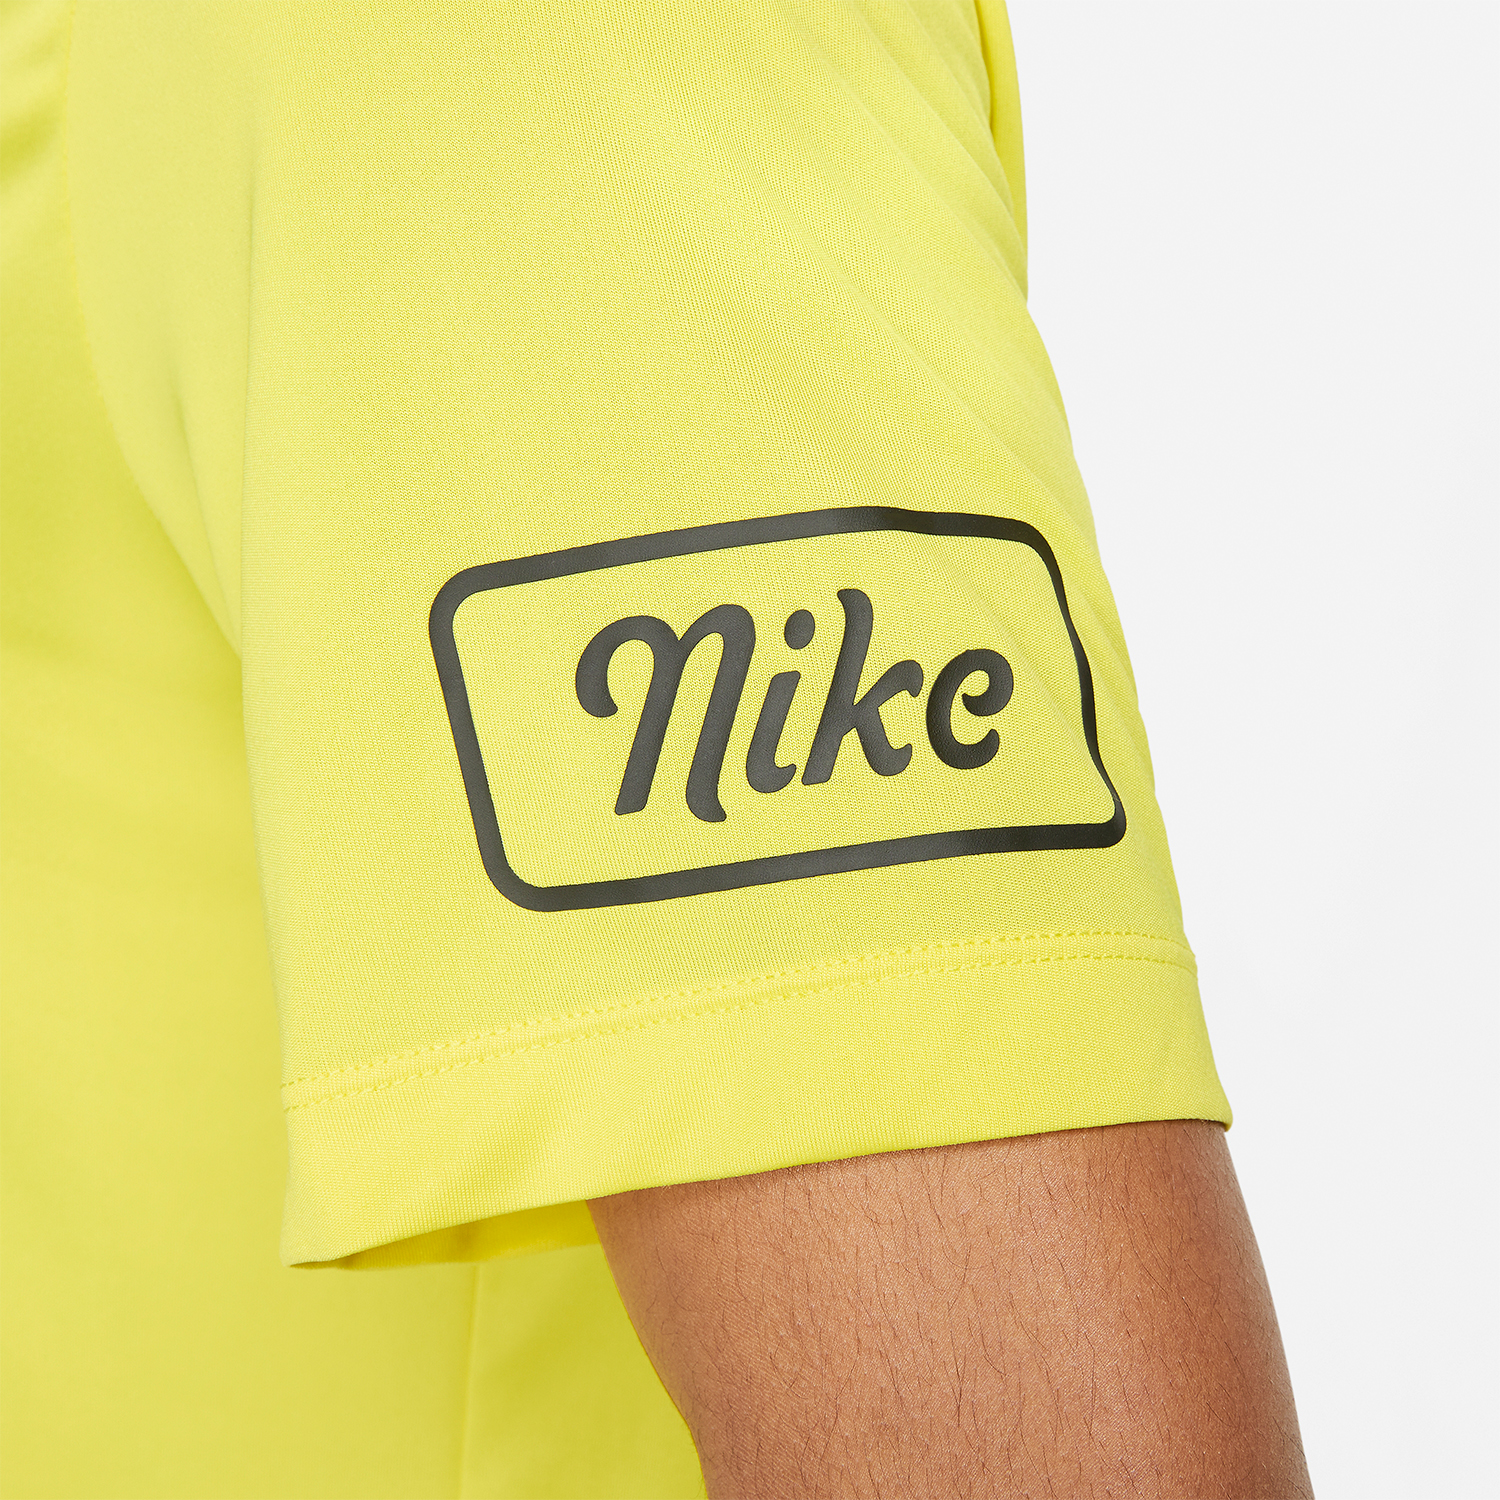 Nike Dri-FIT Body Shop Logo T-Shirt - Yellow Strike